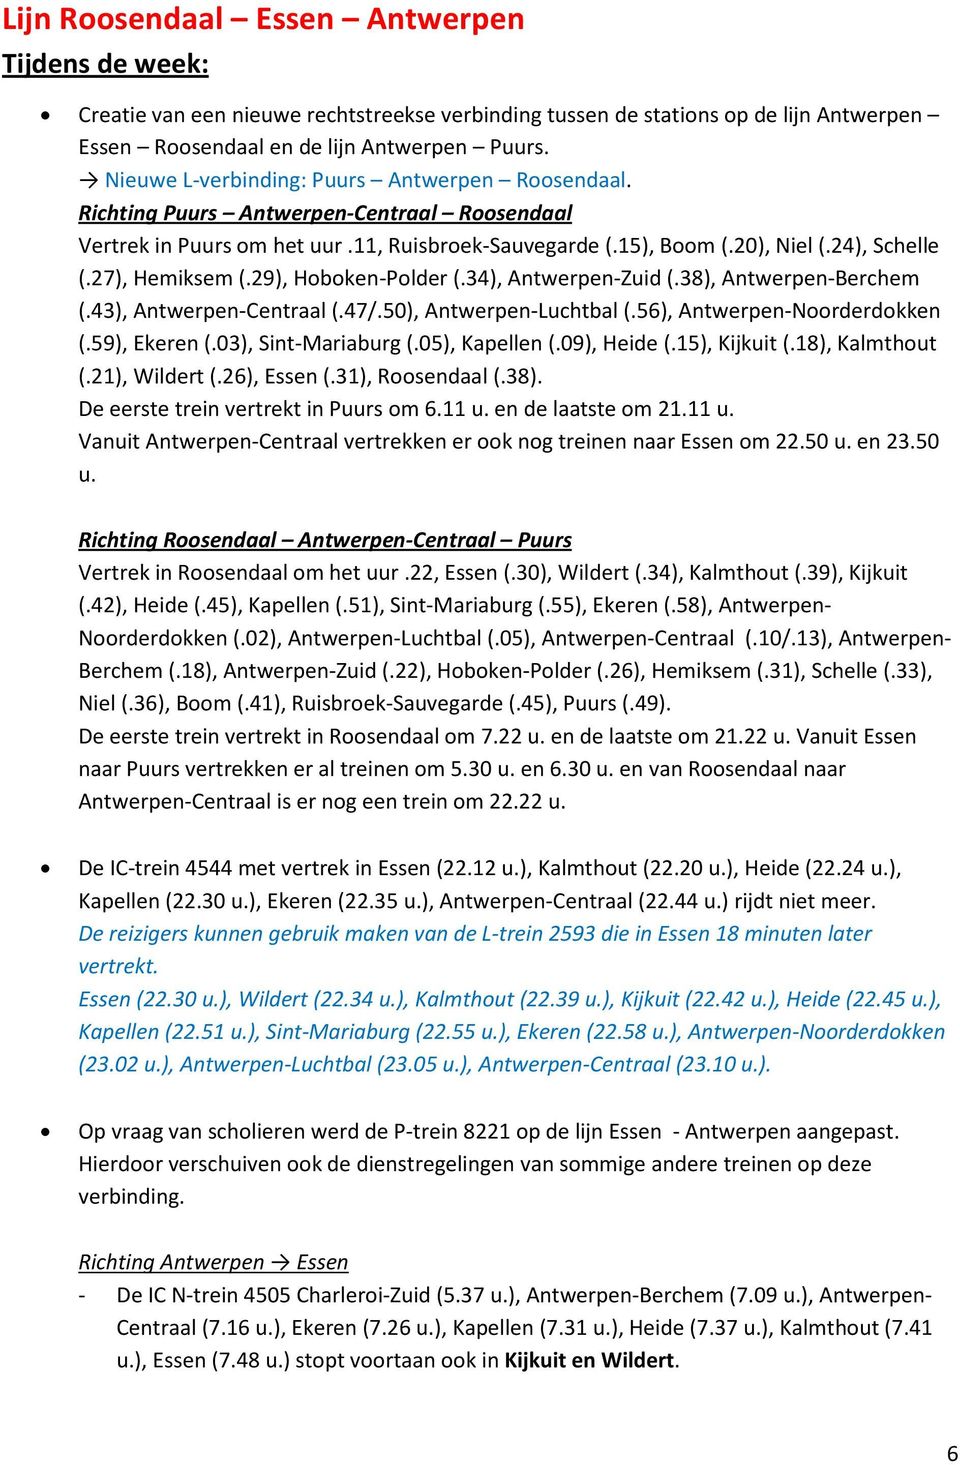 27), Hemiksem (.29), Hoboken-Polder (.34), Antwerpen-Zuid (.38), Antwerpen-Berchem (.43), Antwerpen-Centraal (.47/.50), Antwerpen-Luchtbal (.56), Antwerpen-Noorderdokken (.59), Ekeren (.